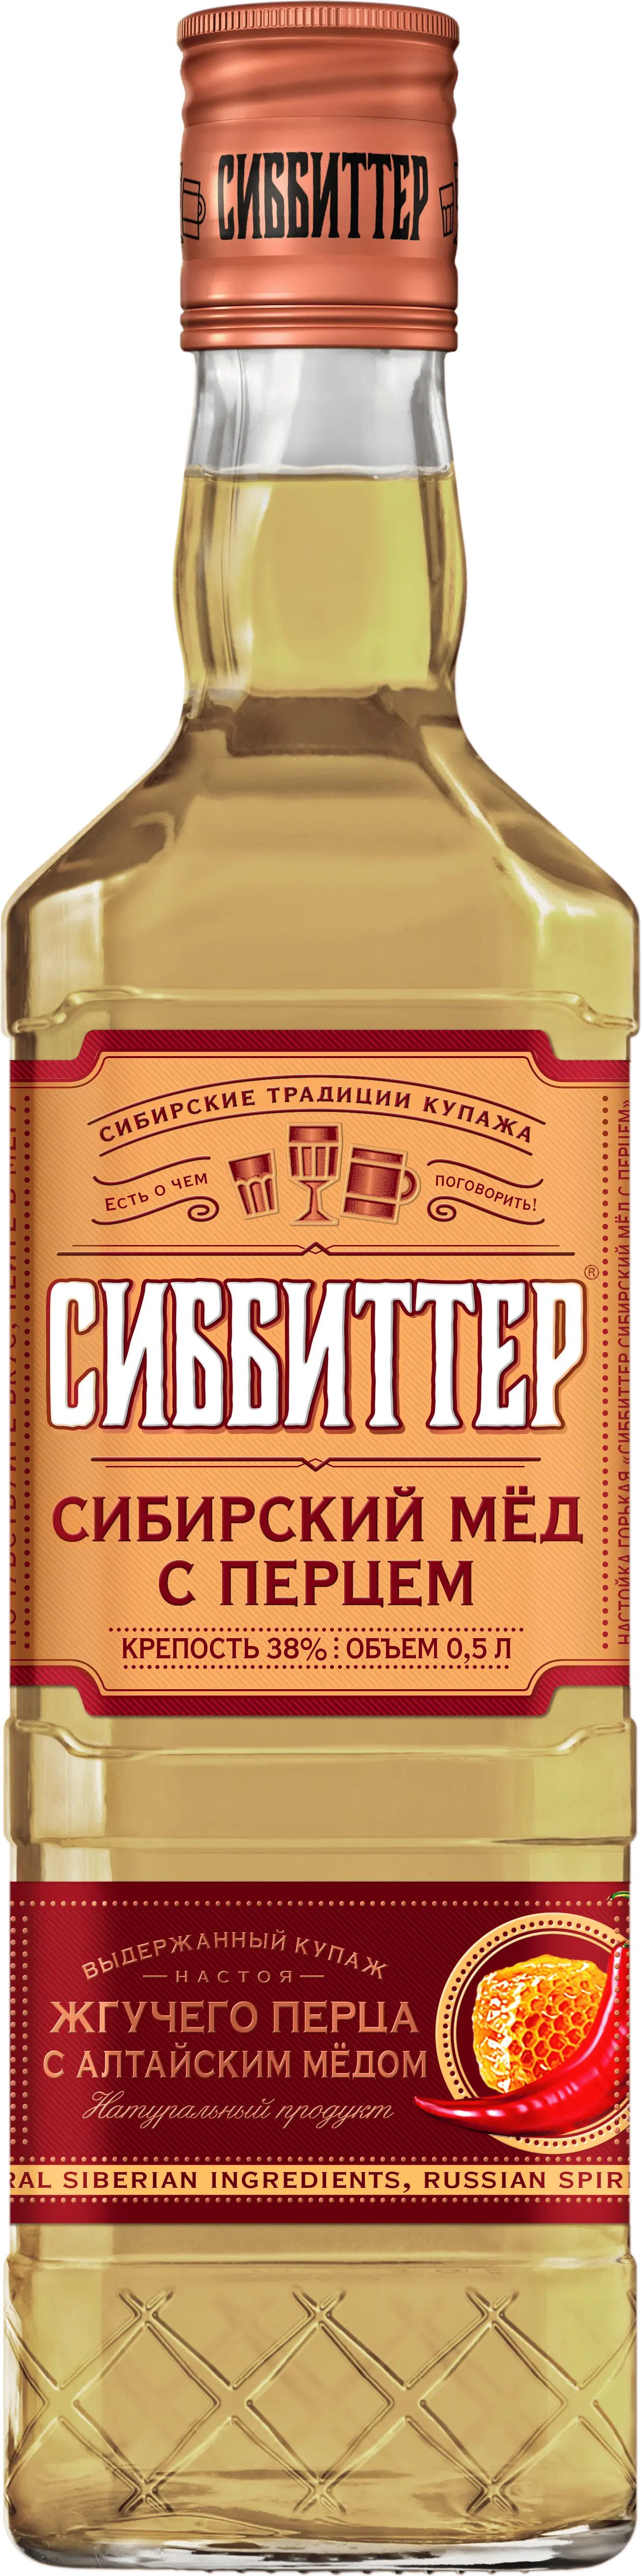 Сиббиттер сибирский мед с перцем (Sibbitter Siberian honey with pepper)